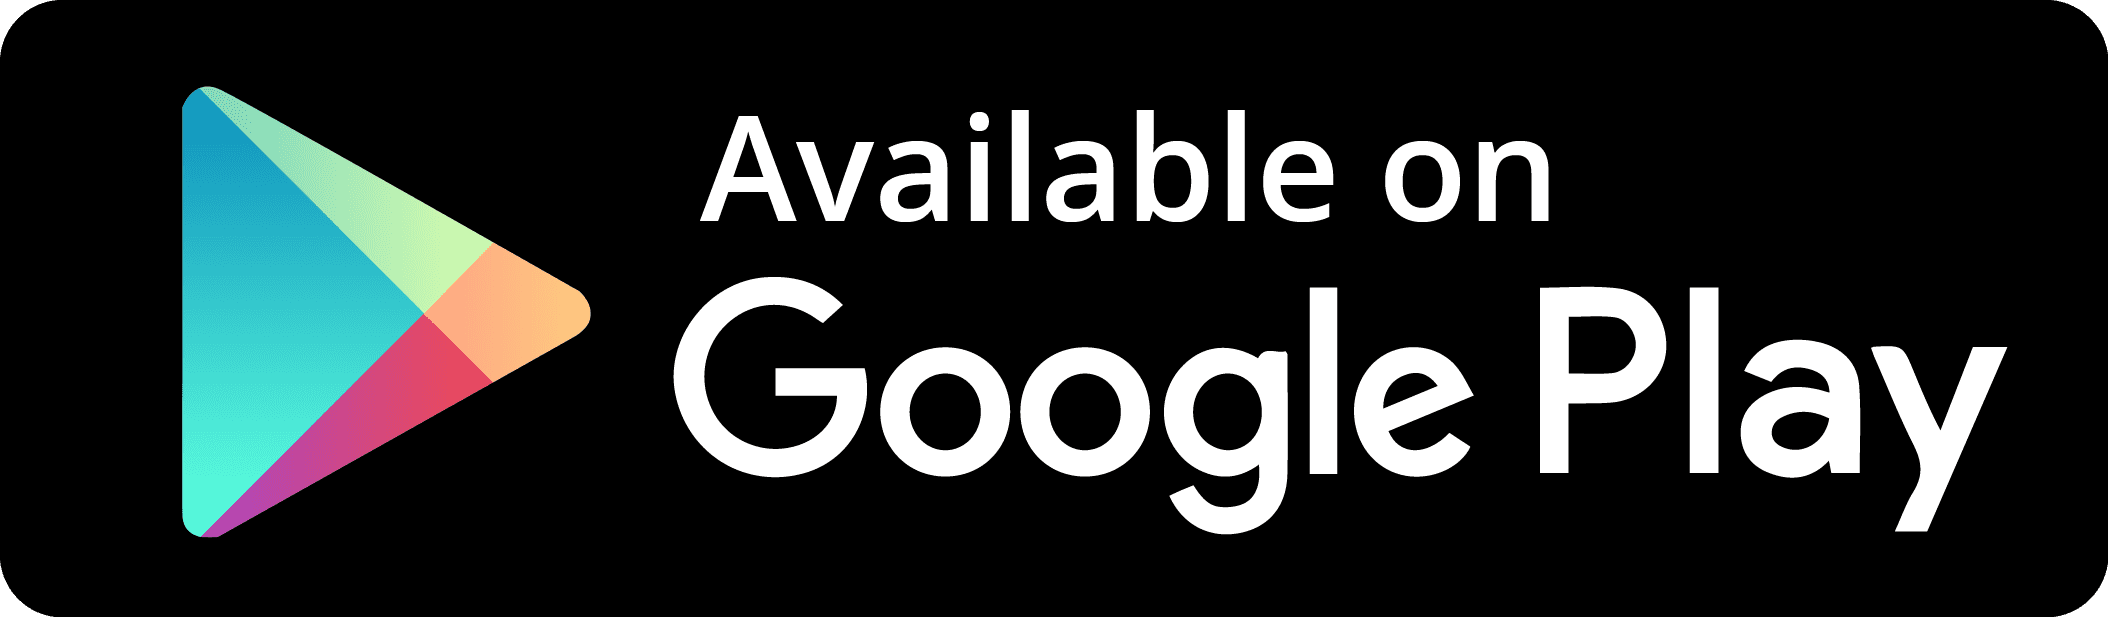 Гугл плей. Available on Google Play. Логотип плей Маркет. Иконка Google Play PNG.